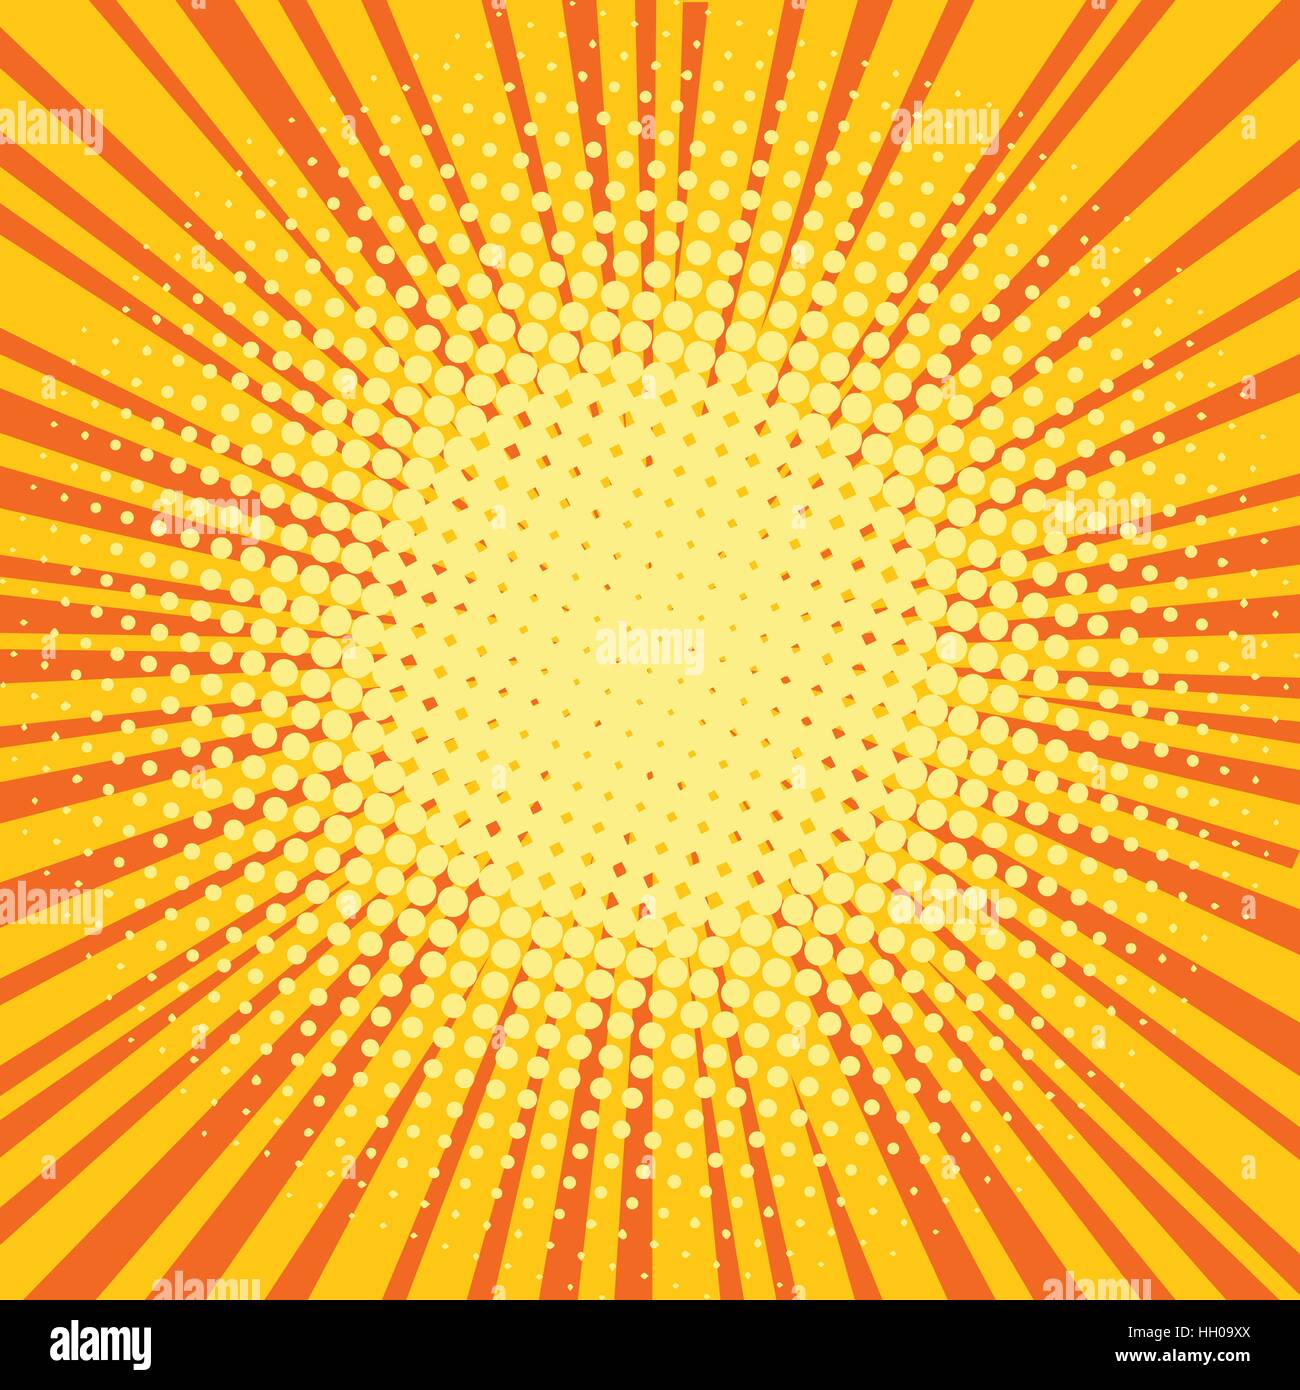 Yellow orange rays comic pop art retro background Stock Vector